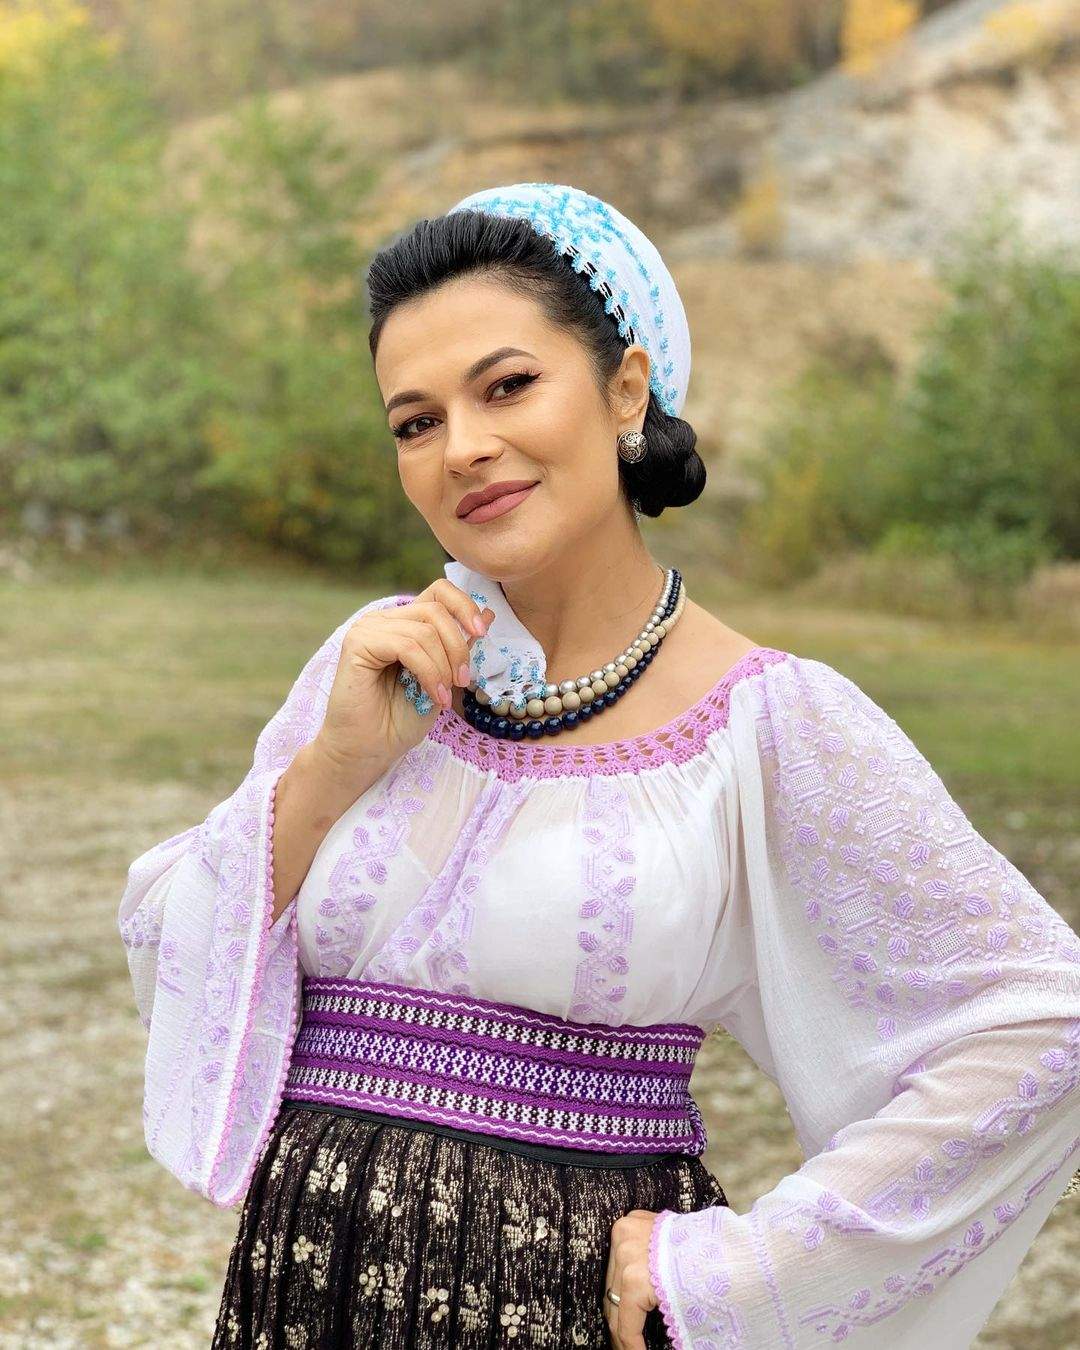 Olguța Berbec s-a fotografiat în natură, în costumul național tradițional